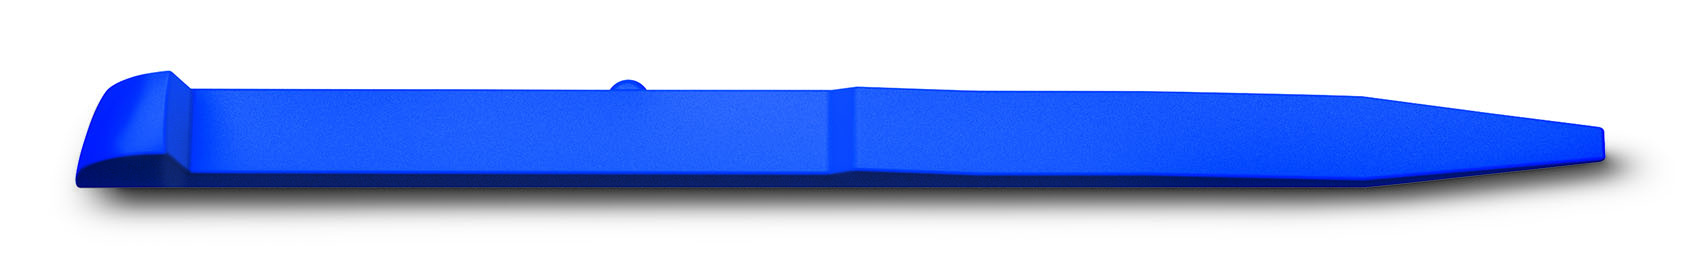 Зубочистка для ножей Victorinox (A.6141.2.10) синий